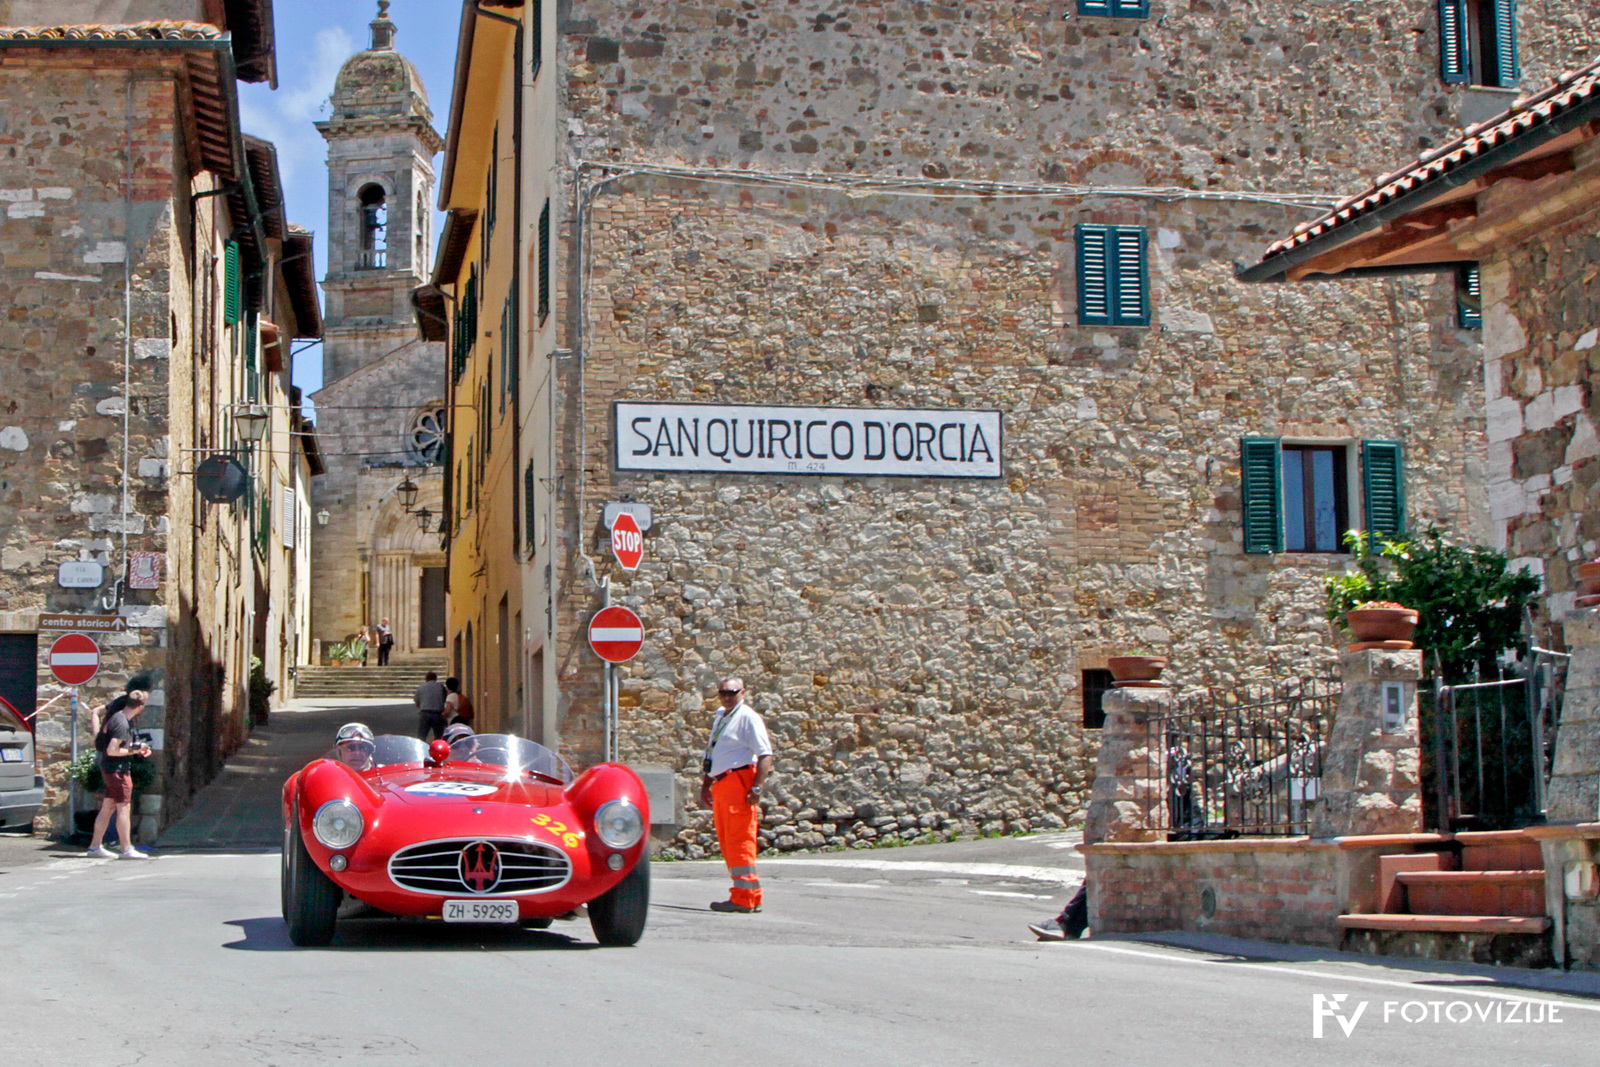 Mille Miglia 2018: Čudoviti maserati A6 GCS 53 Fantuzzi zapušča kraj, kjer stoji spomenik Taziu Nuvolariju, v spomin na njegovo zmago leta 1930